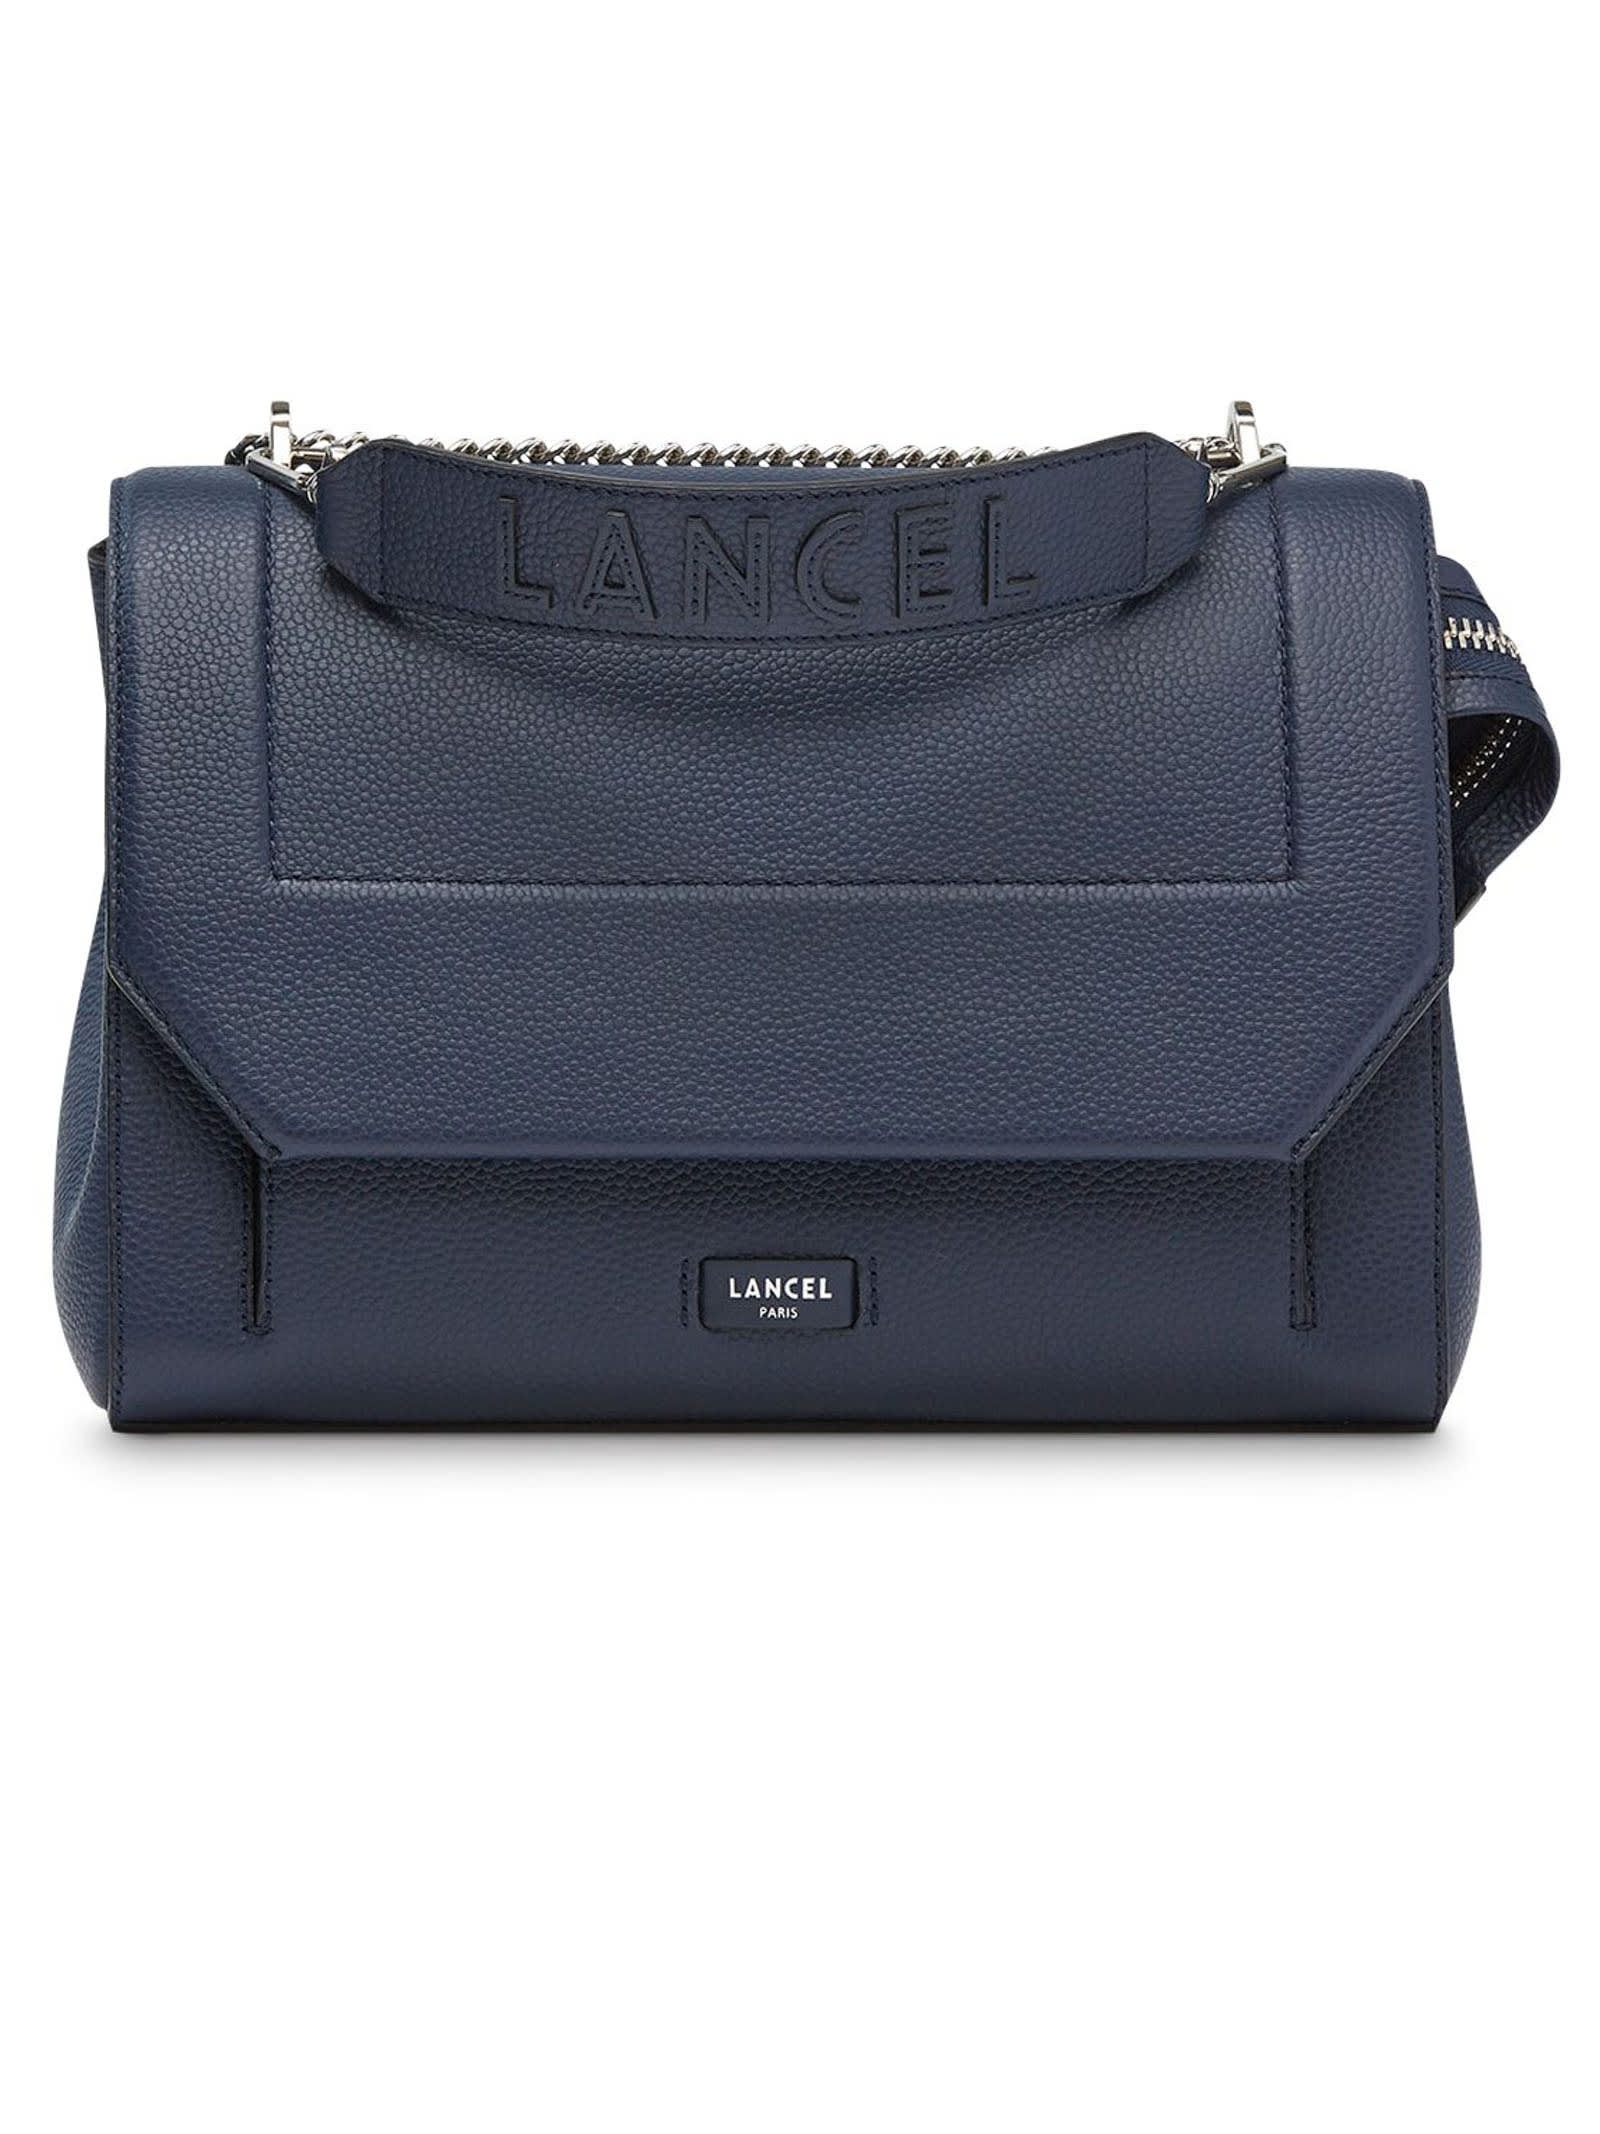 Lancel Blue Leather Shoulder Bag